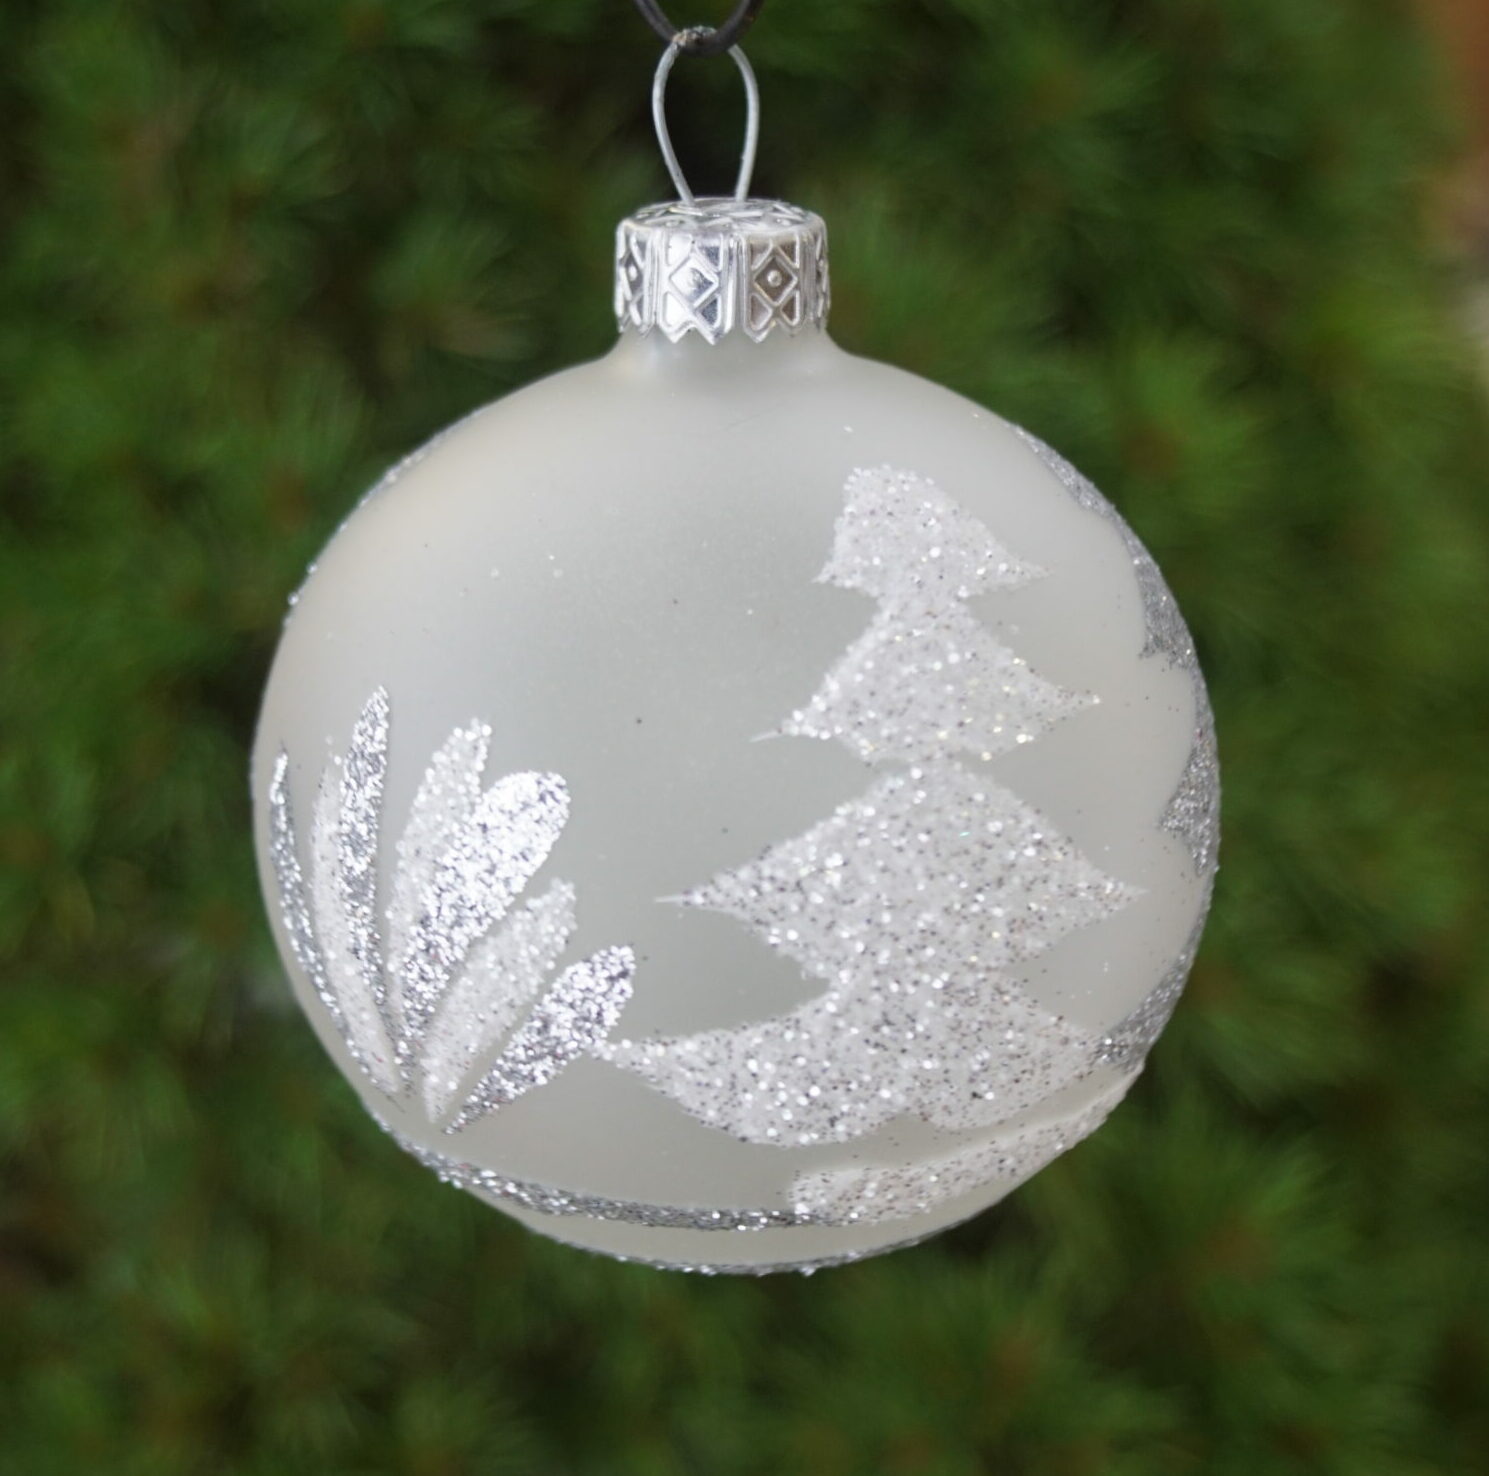 Julekugle Mat glas, Dekoreret med juletræer i sølv-sne glitter , 7 cm